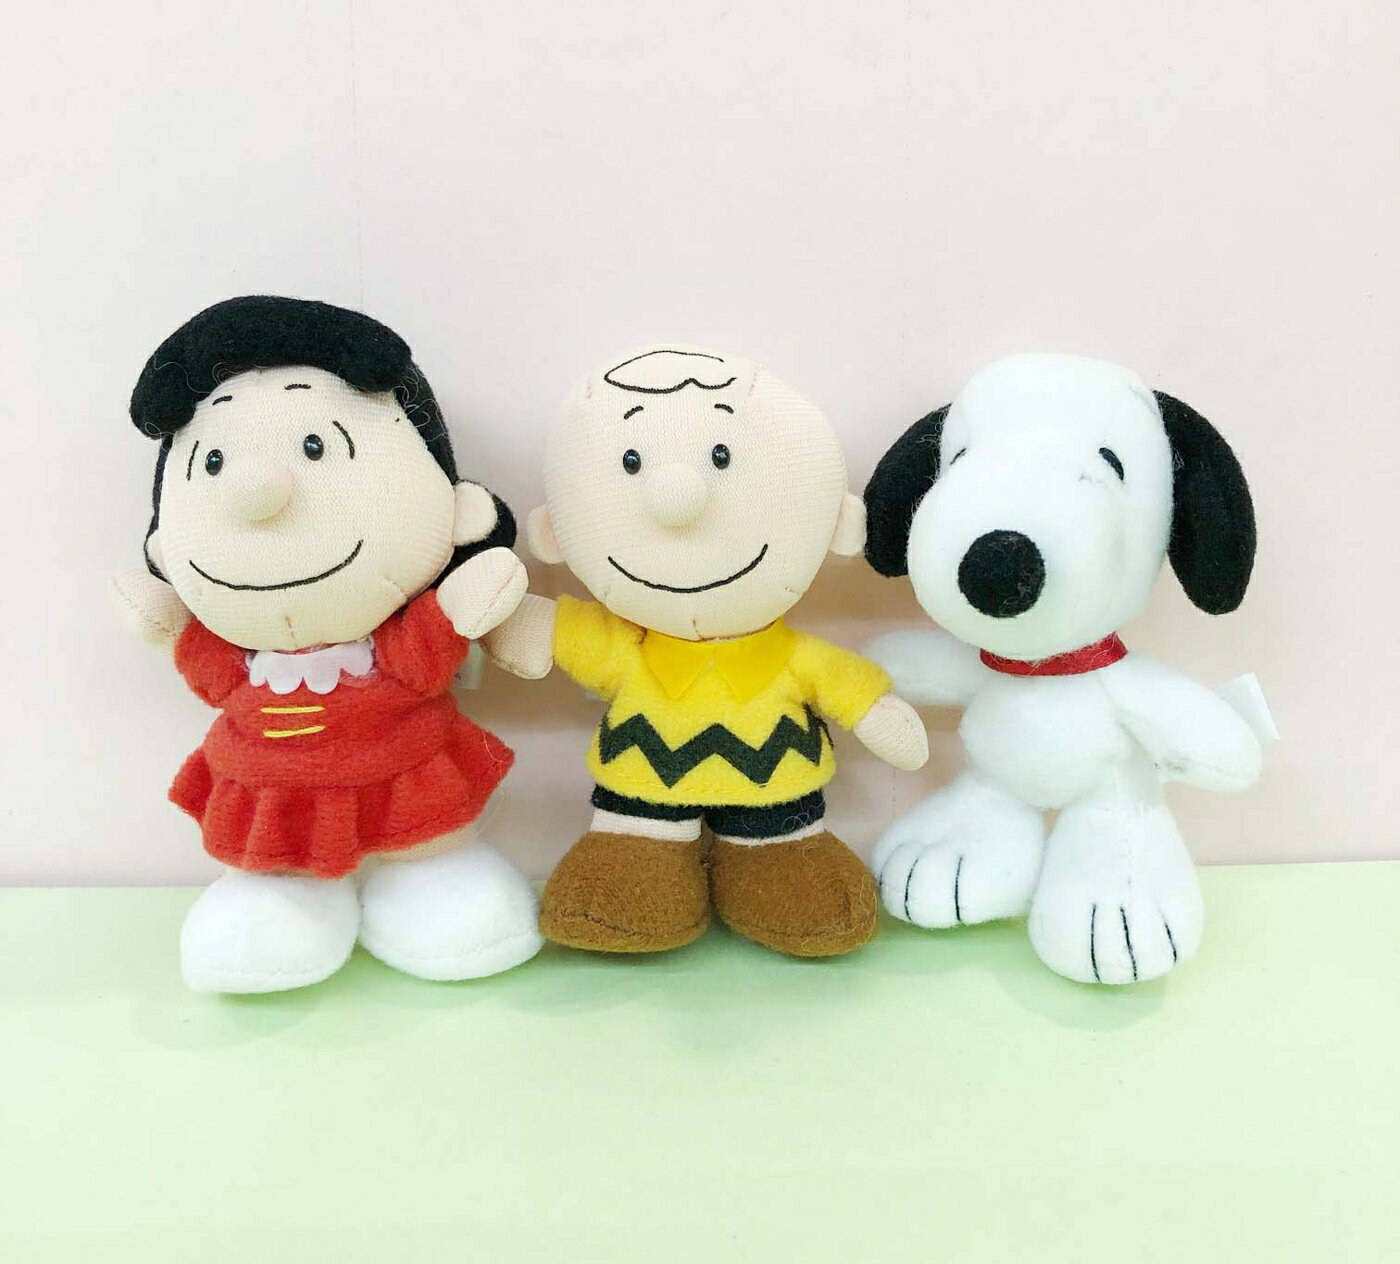 【震撼精品百貨】史奴比Peanuts Snoopy SNOOPY 絨毛娃娃組合附提盒-朋友#85032 震撼日式精品百貨